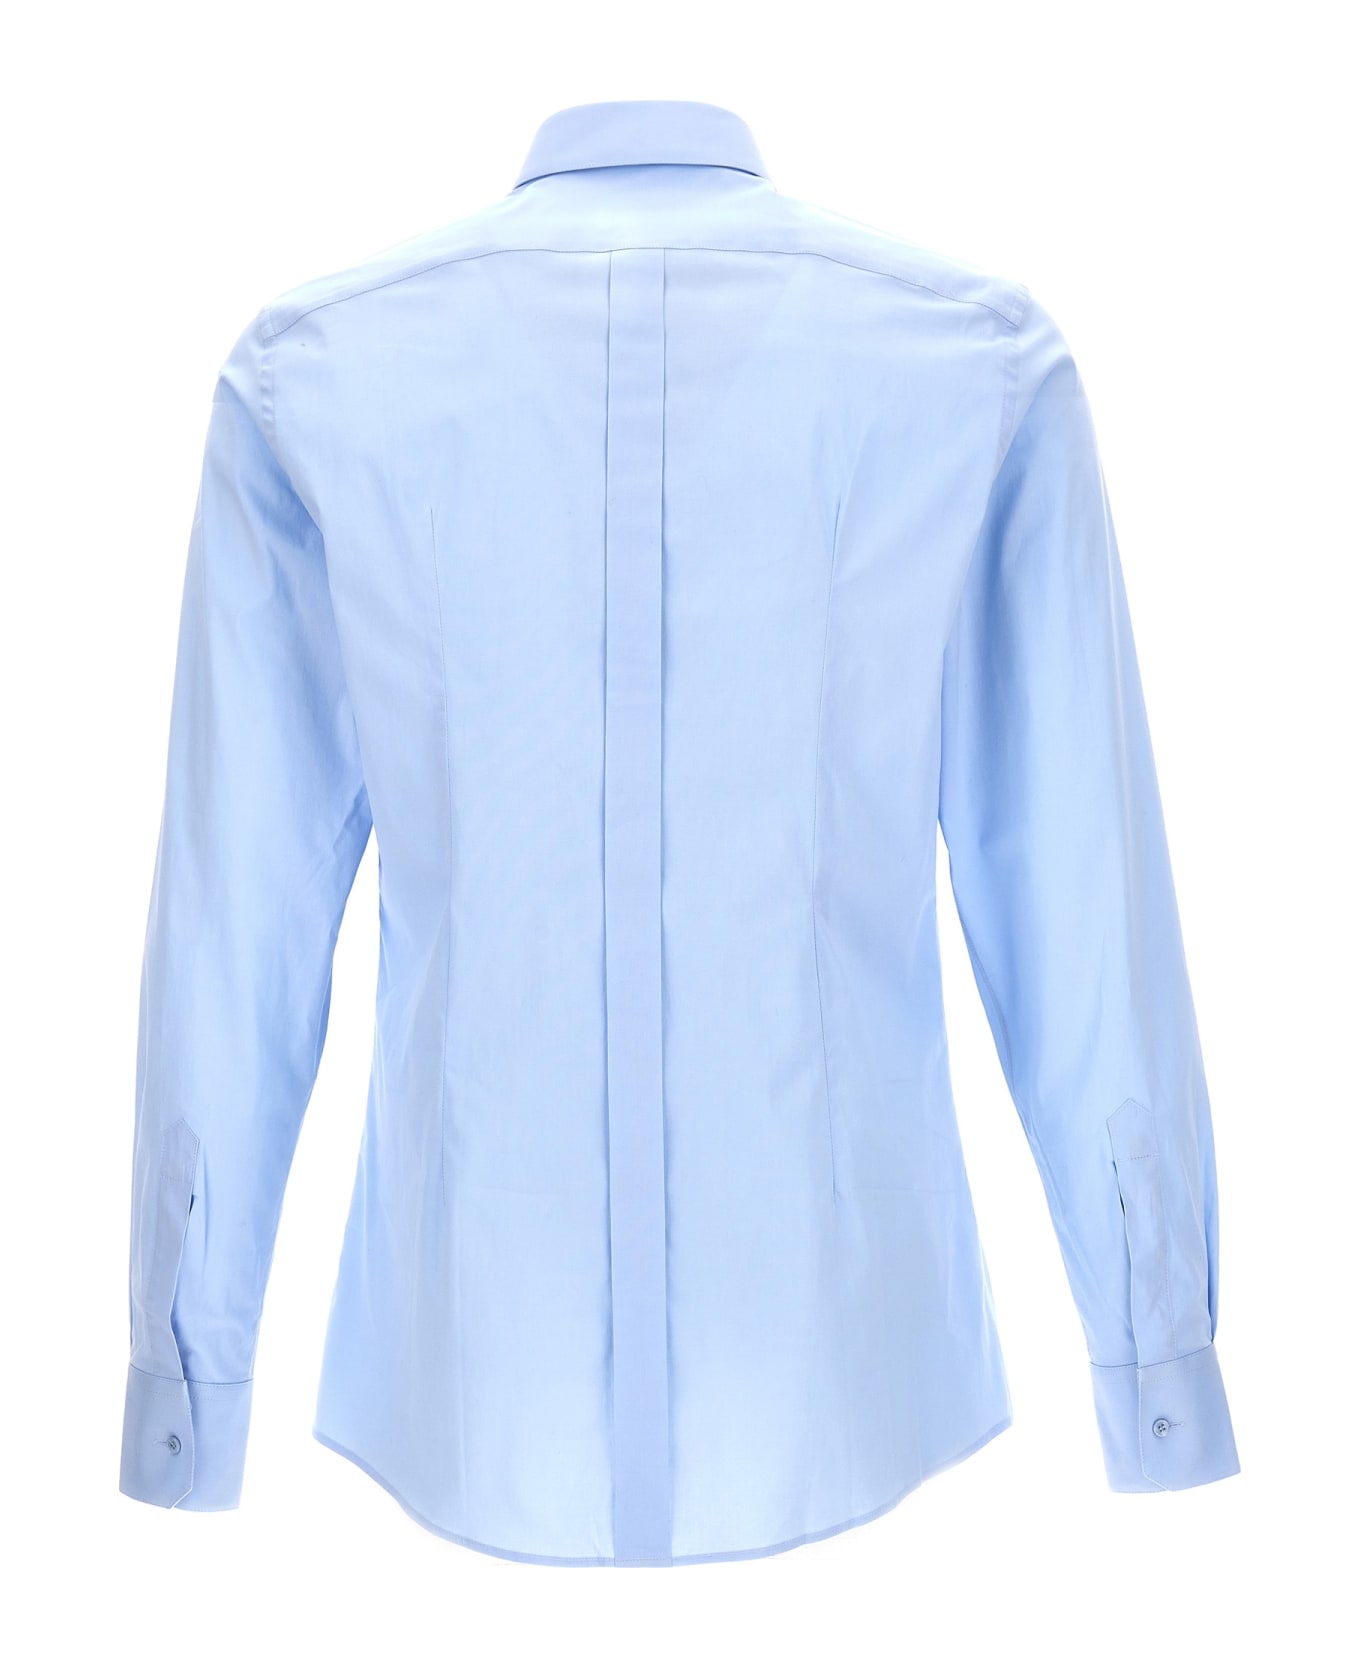 Dolce & Gabbana Long-sleeved Shirt - Light Blue